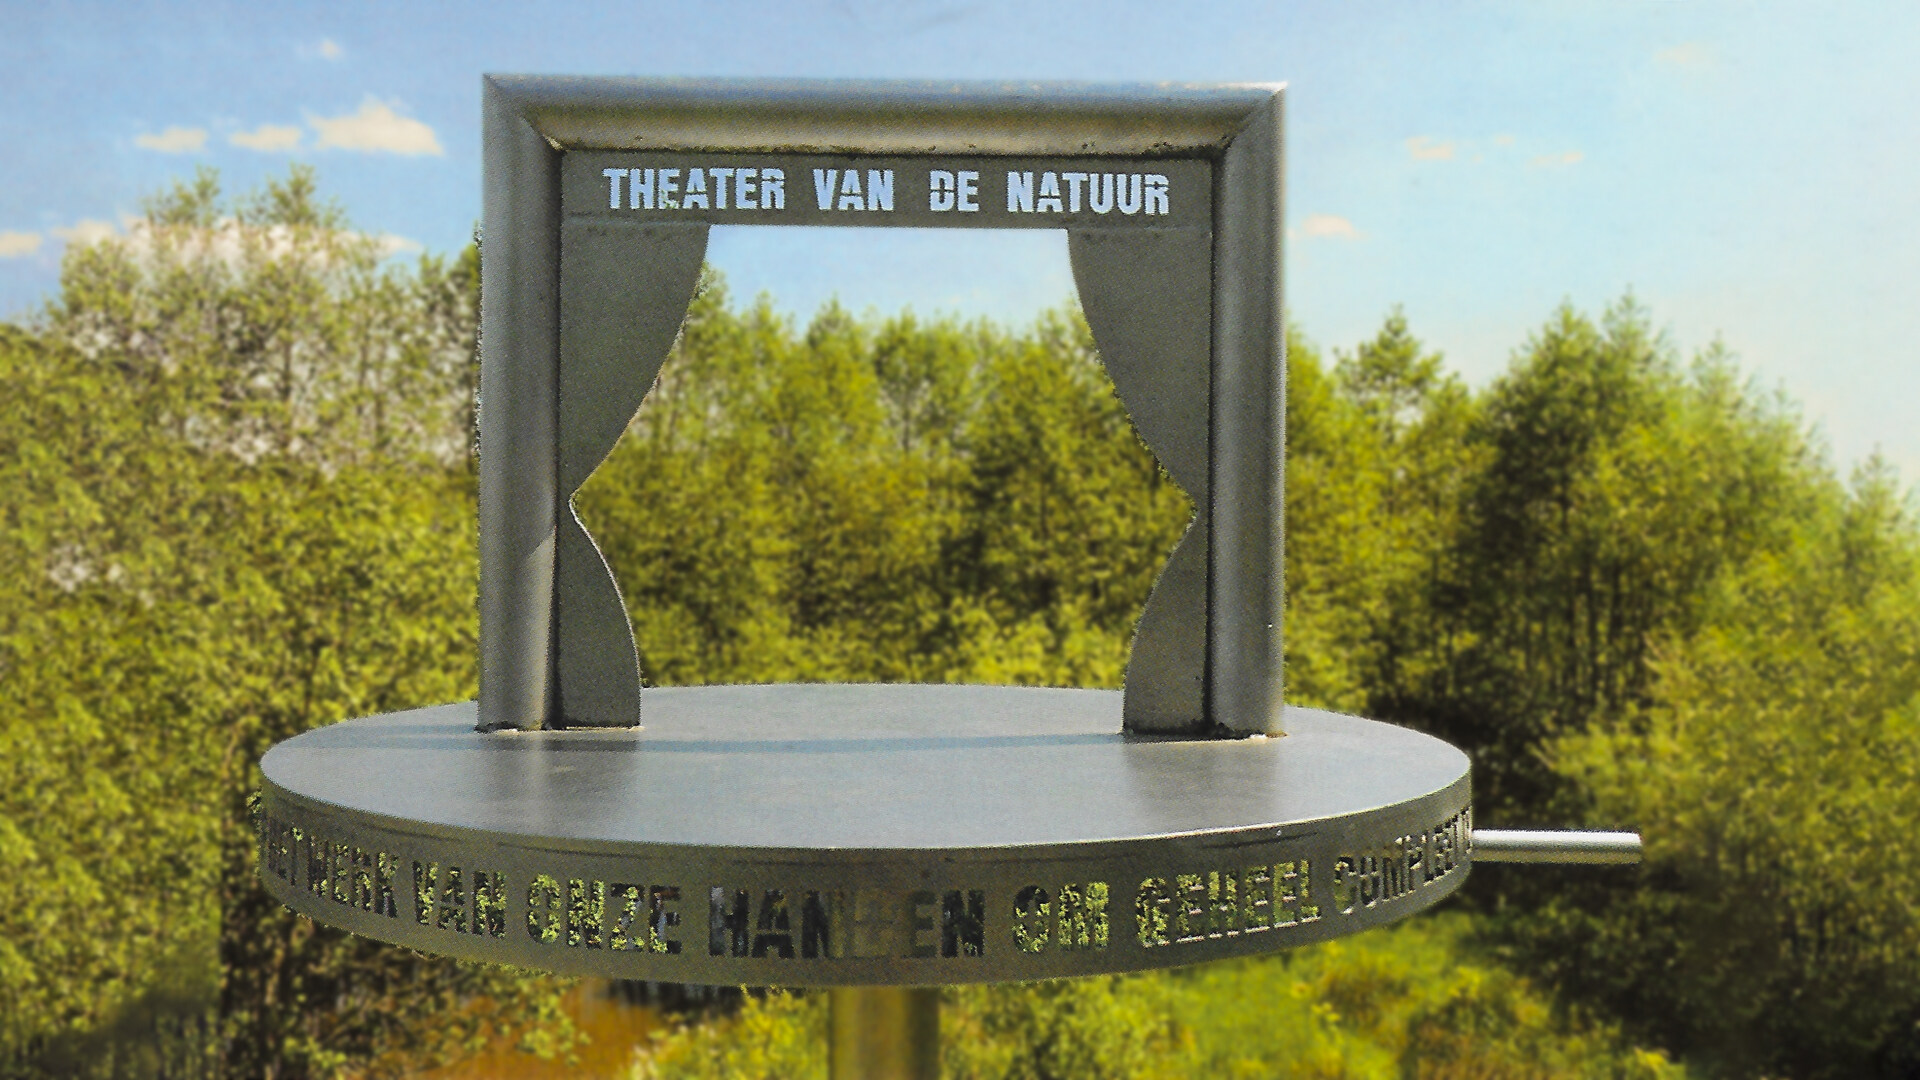 Theater van de natuur